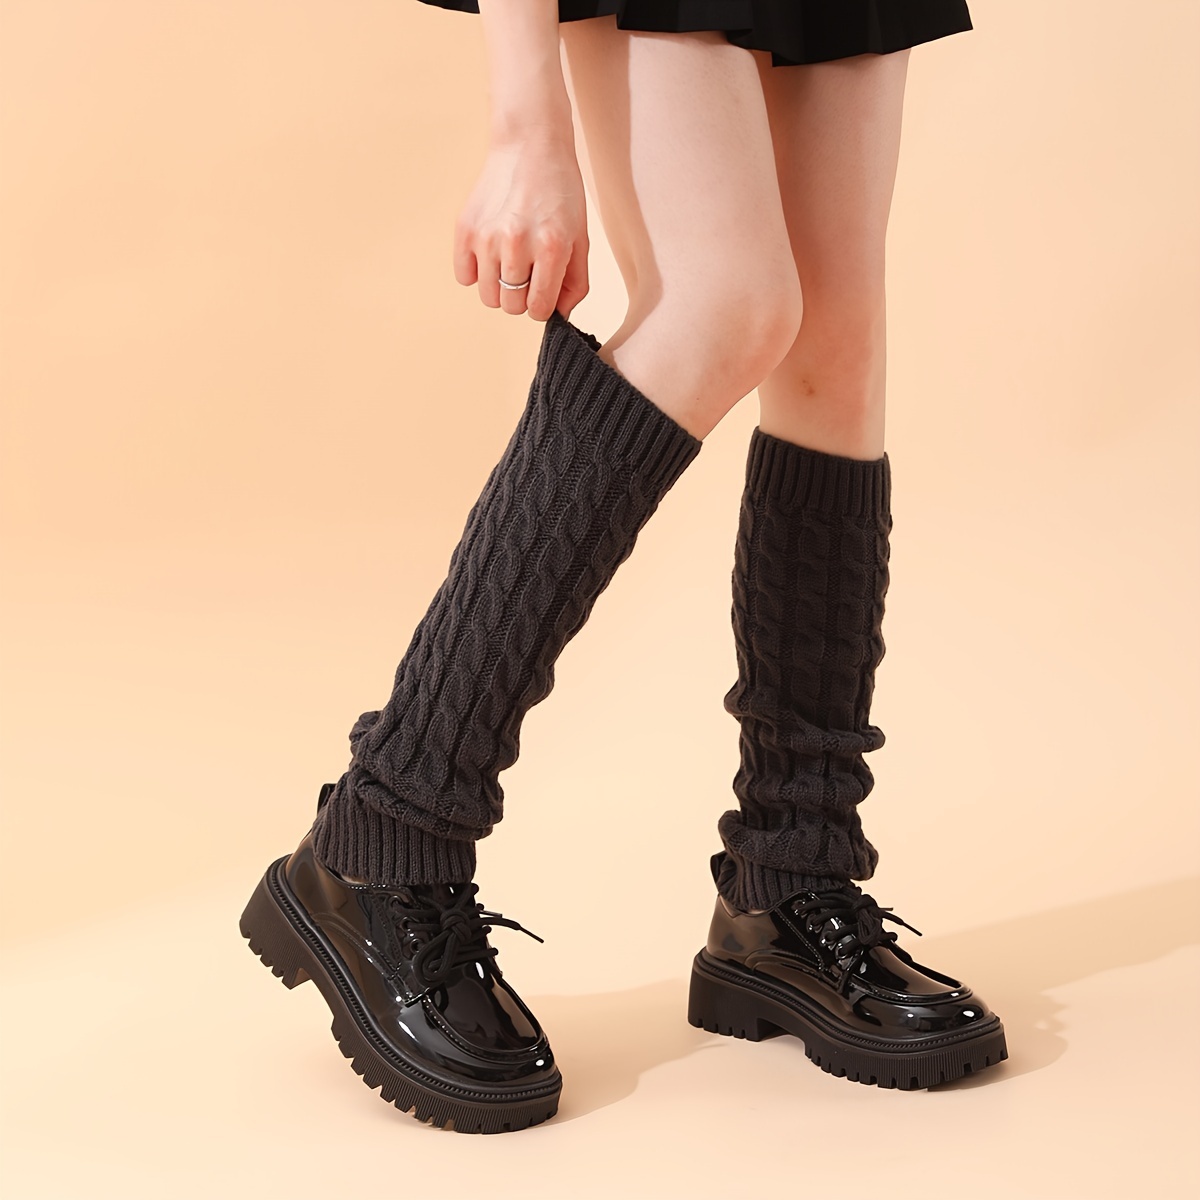 Short Women Crochet Cotton Boot Cuffs Girls Winter Knit Leg